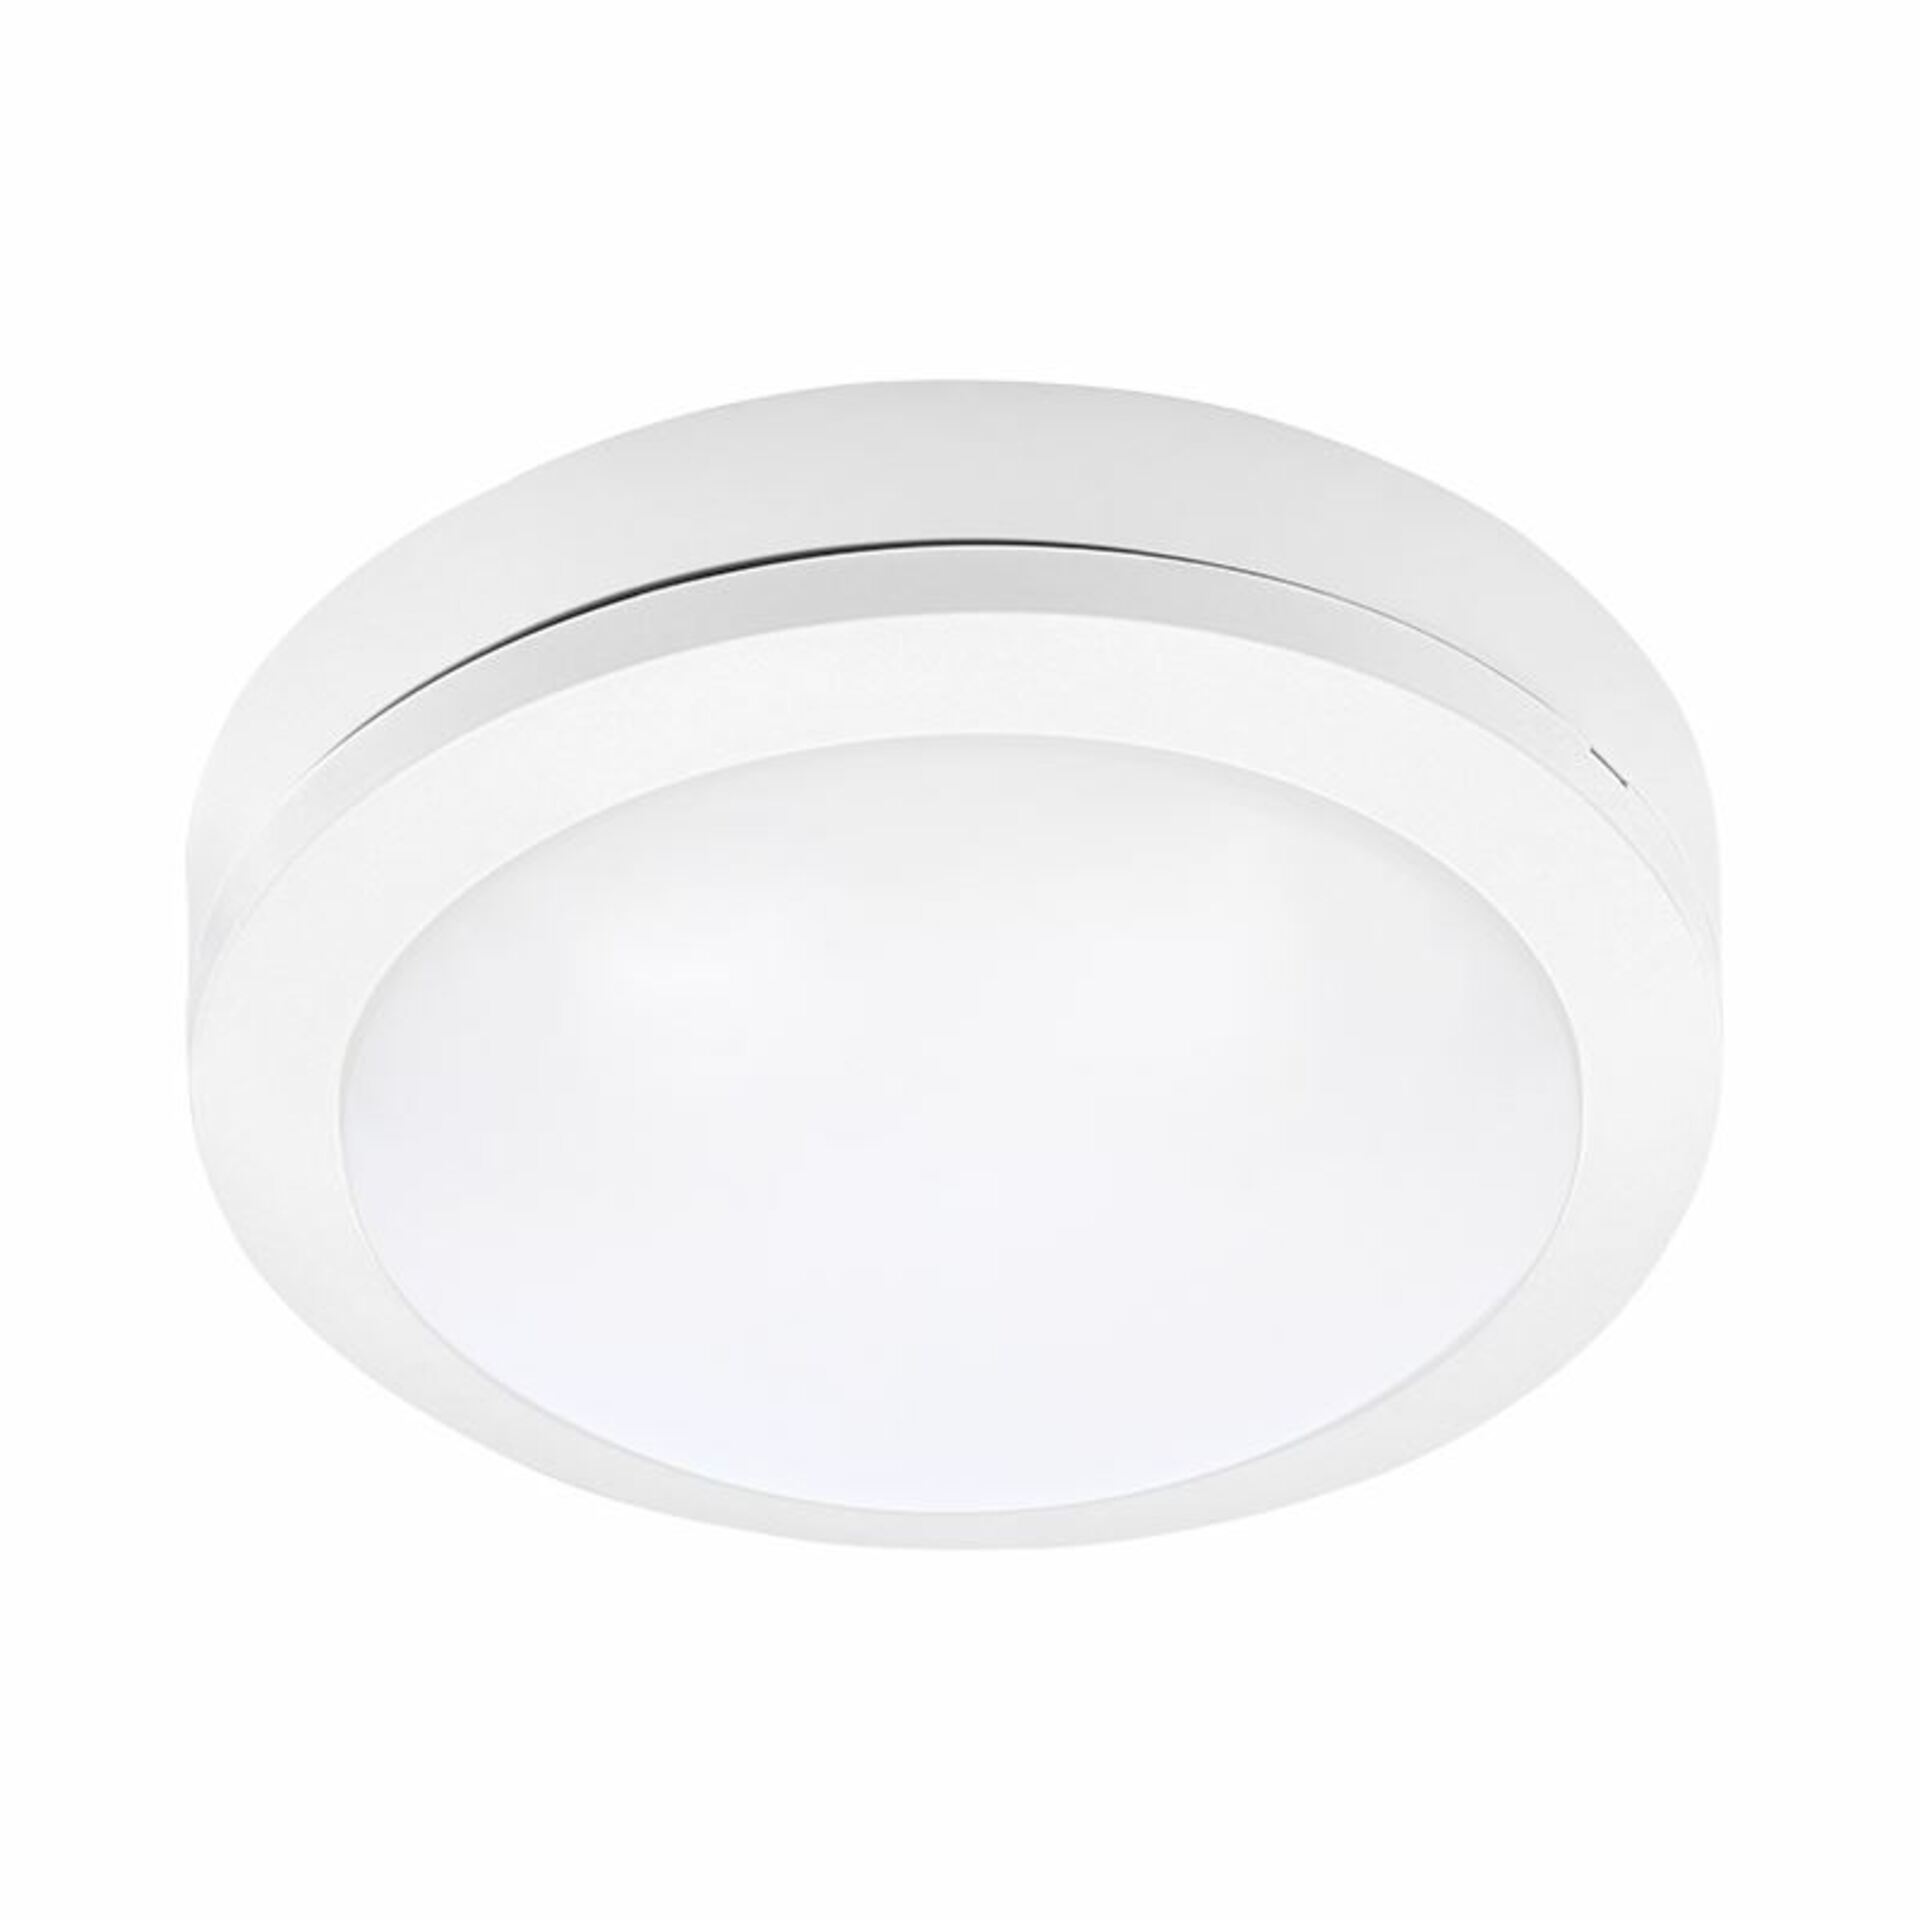 Solight LED venkovní osvětlení Siena, bílé, 13W, 910lm, 4000K, IP54, 17cm WO746-W